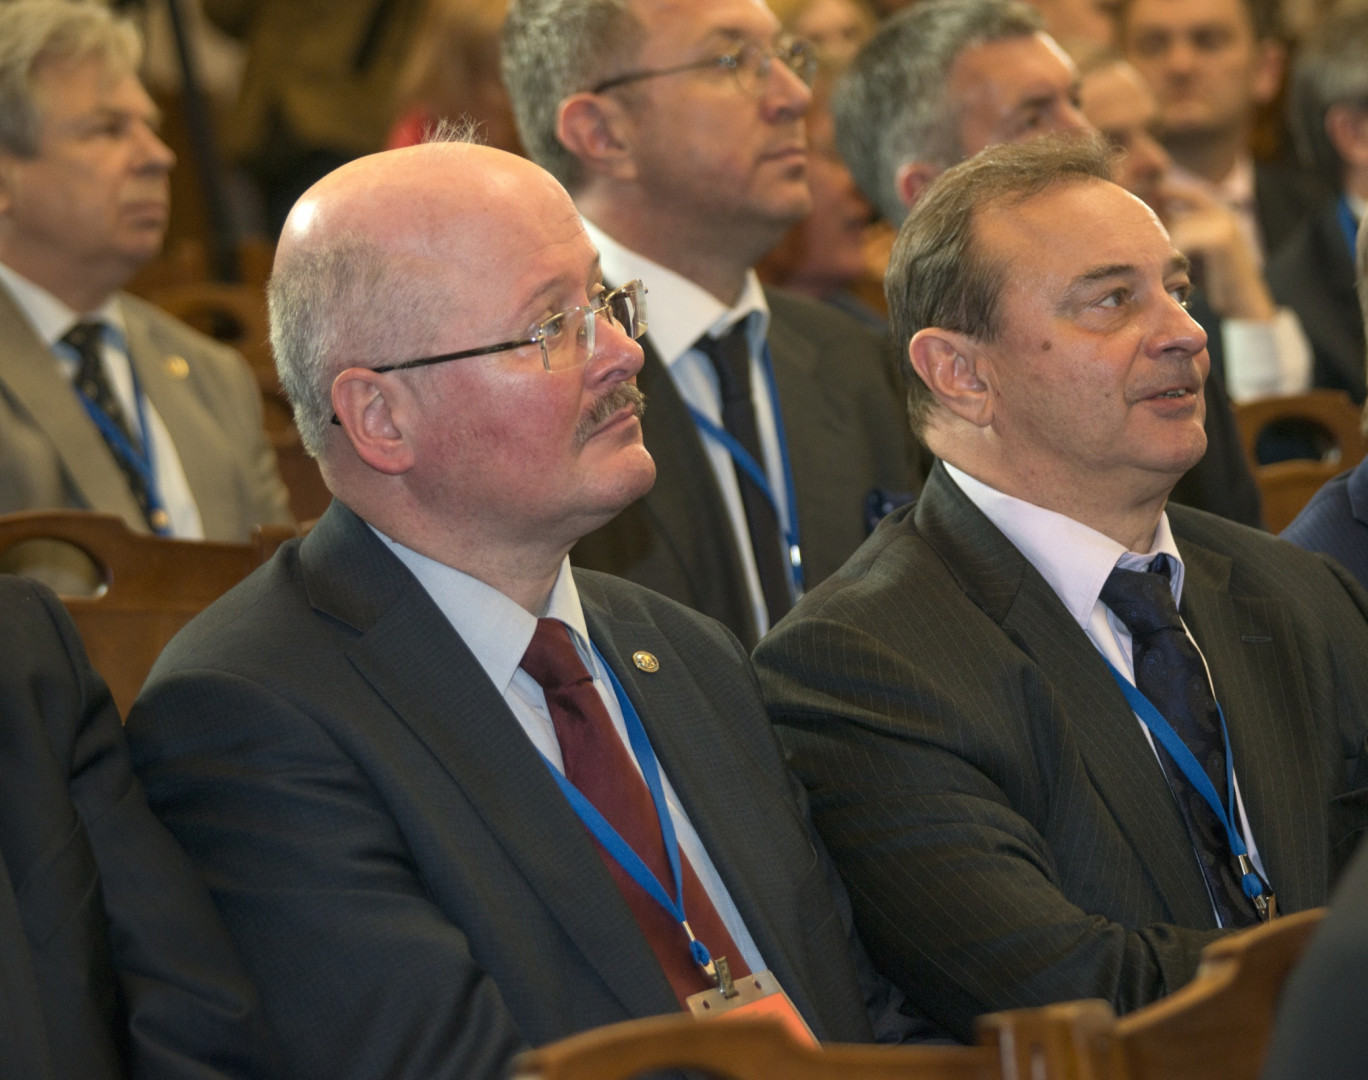 Заседание Попечительского Совета РГО 2015